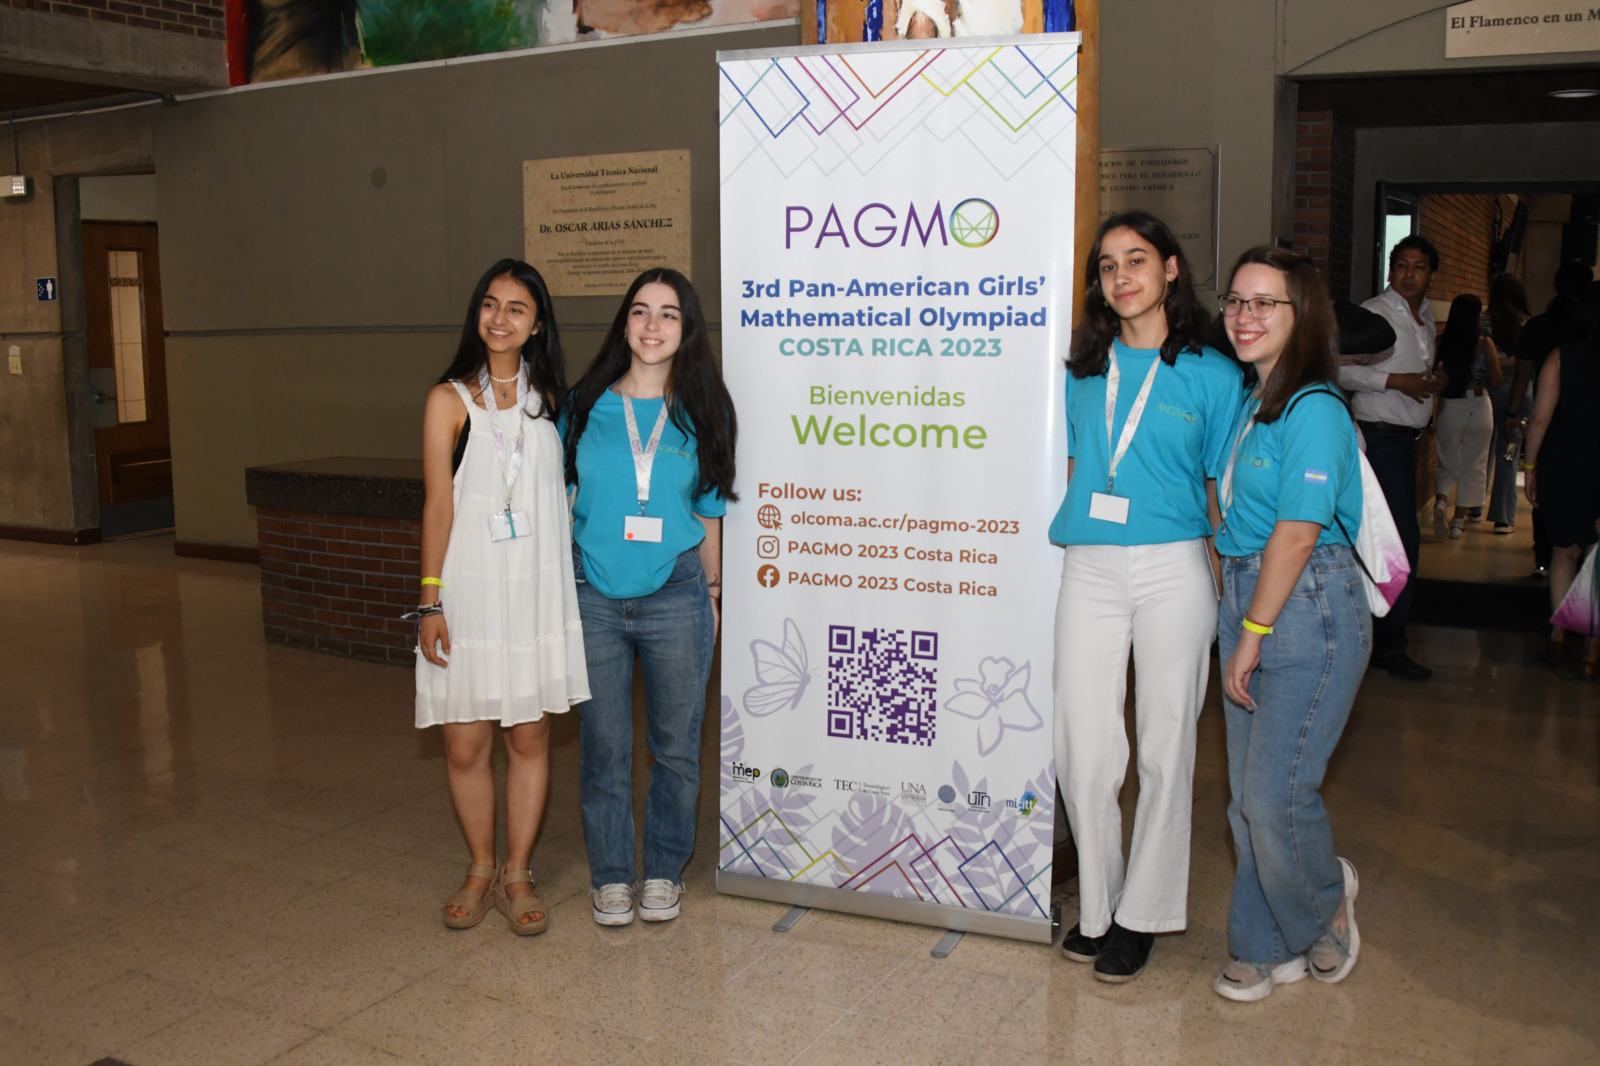 Chicas junto a un banner de la Pagmo